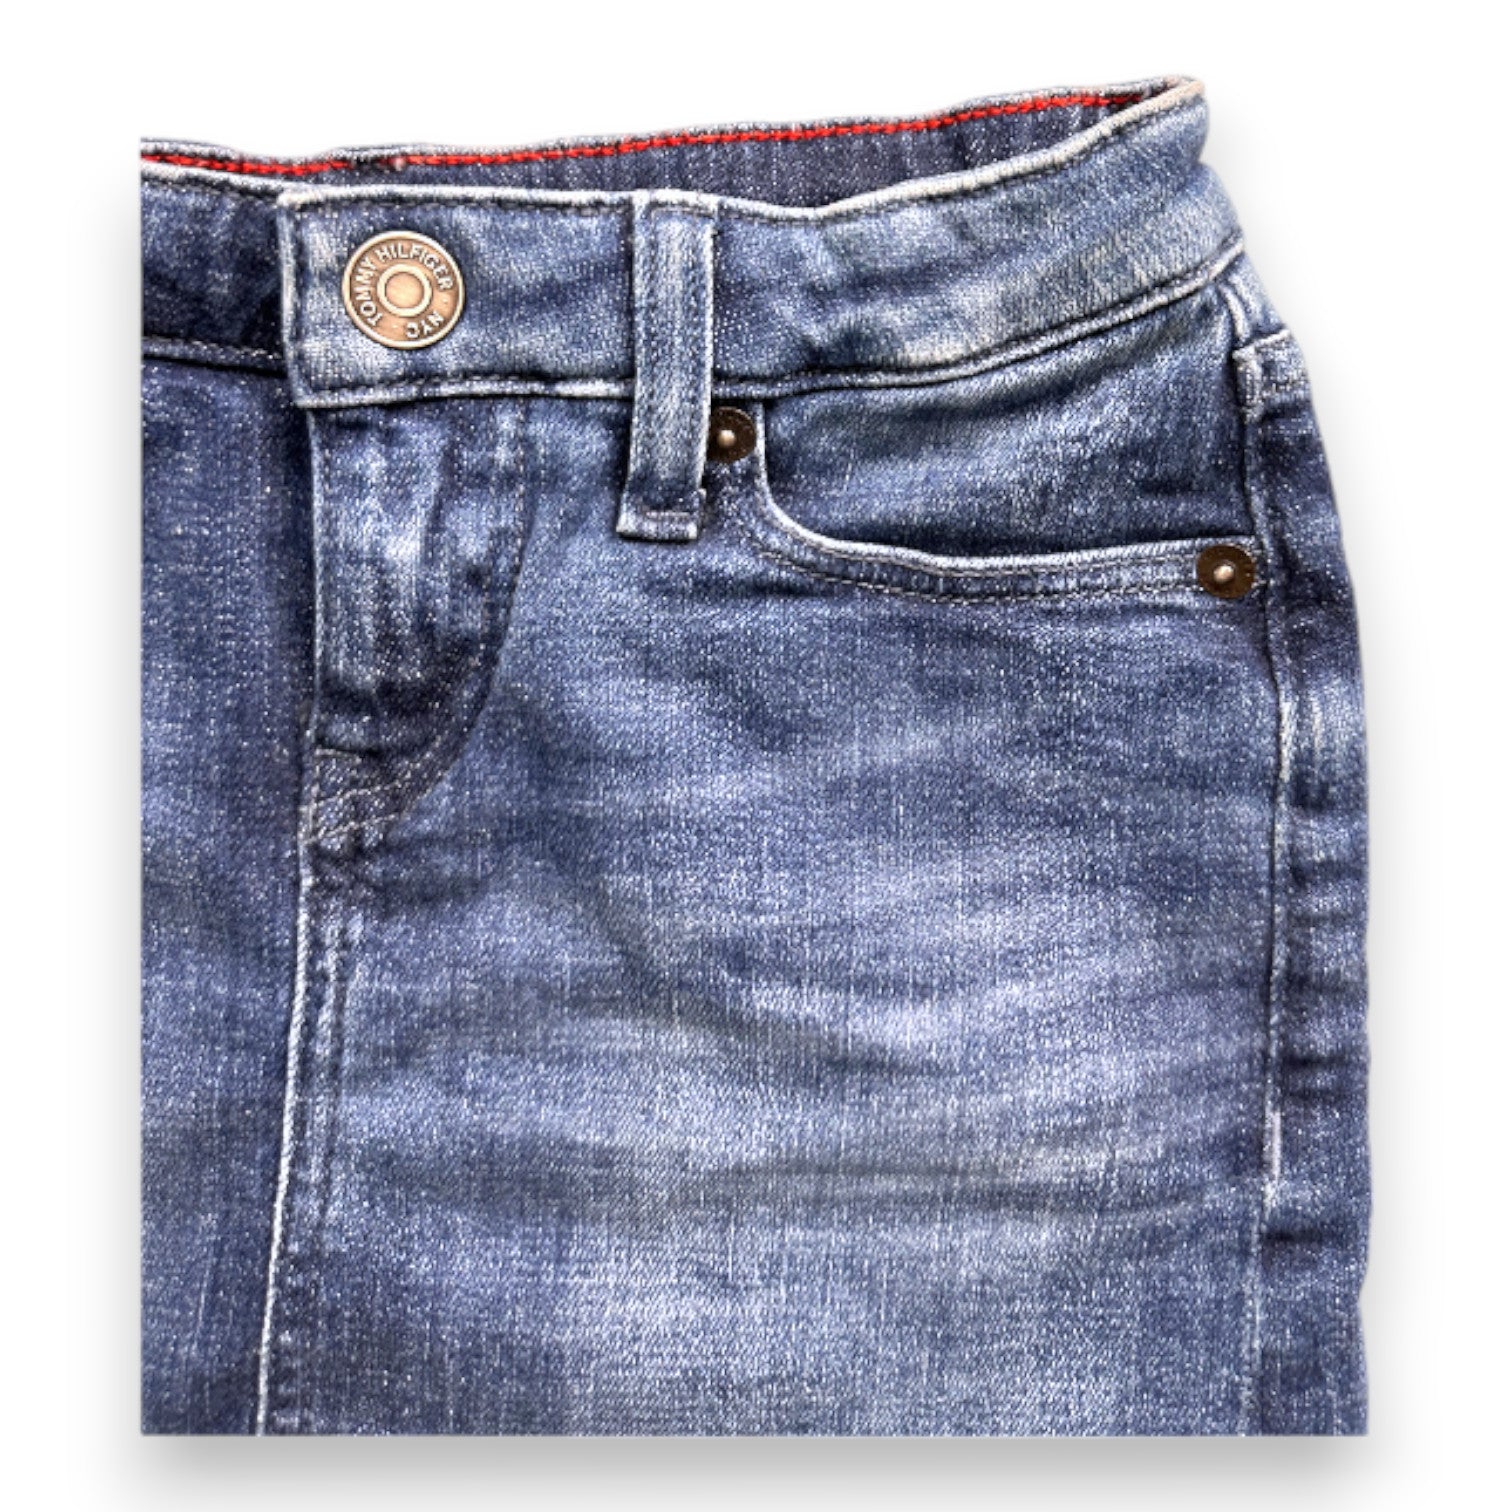 TOMMY HILFIGER - Jupe en jean bleue - 6 ans